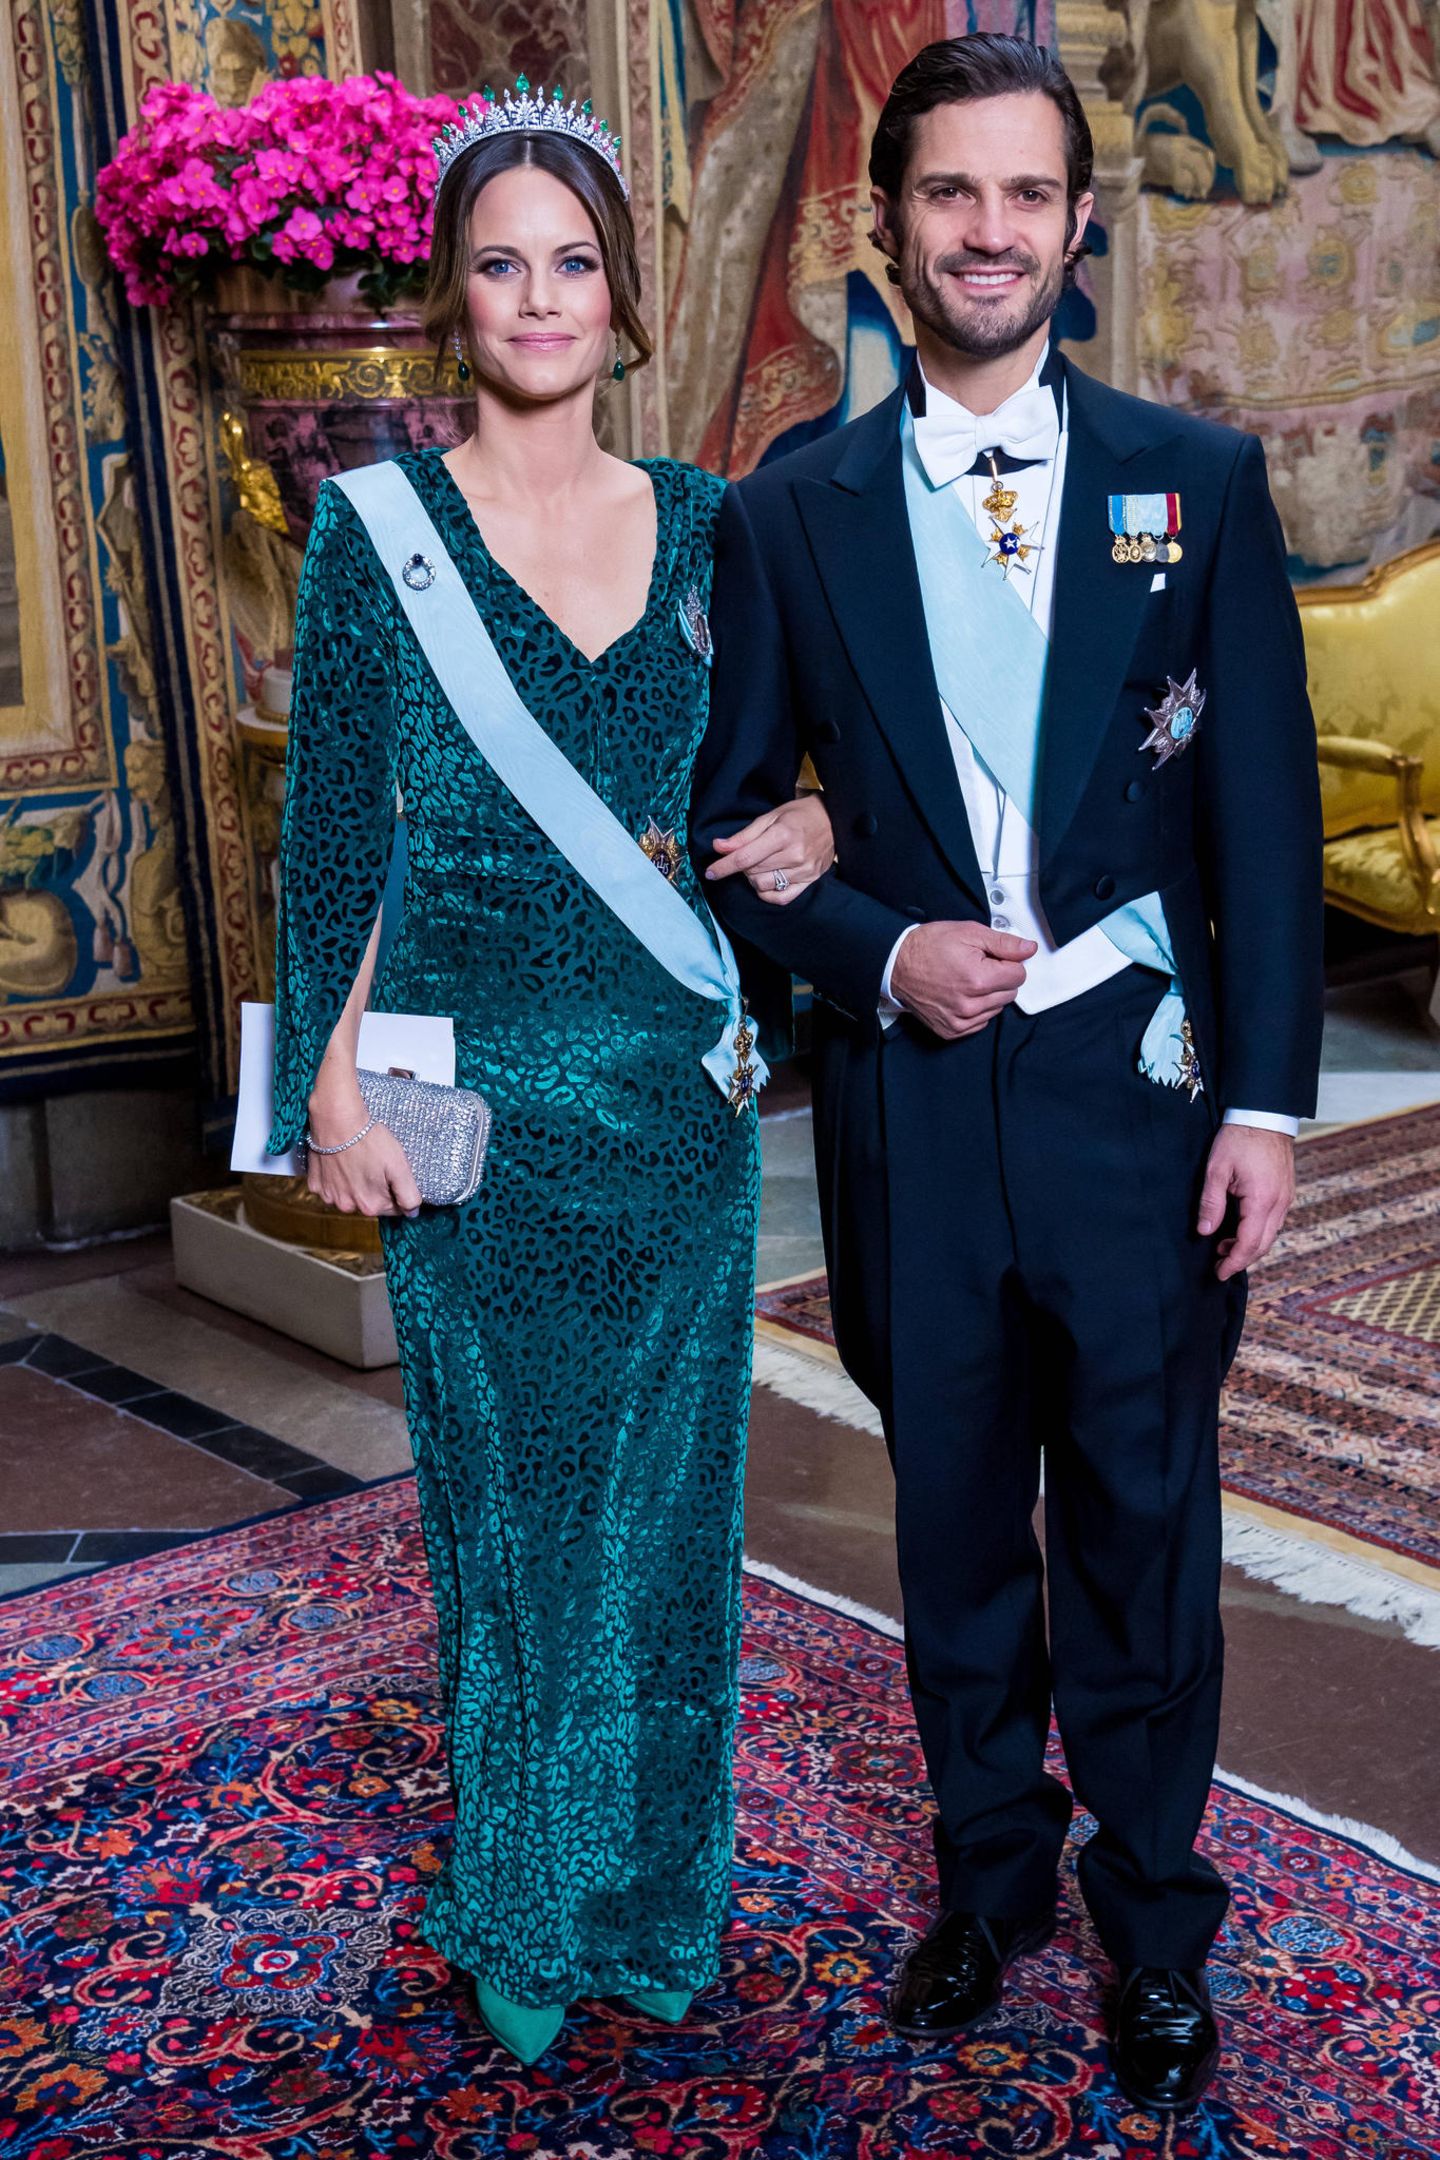 Skandinavien-Royals: 12. November 2019 Auch Prinzessin Sofia glänzt in einem extravaganten grünen Kleid mit Leo-Muster neben Prinz Carl Philip.